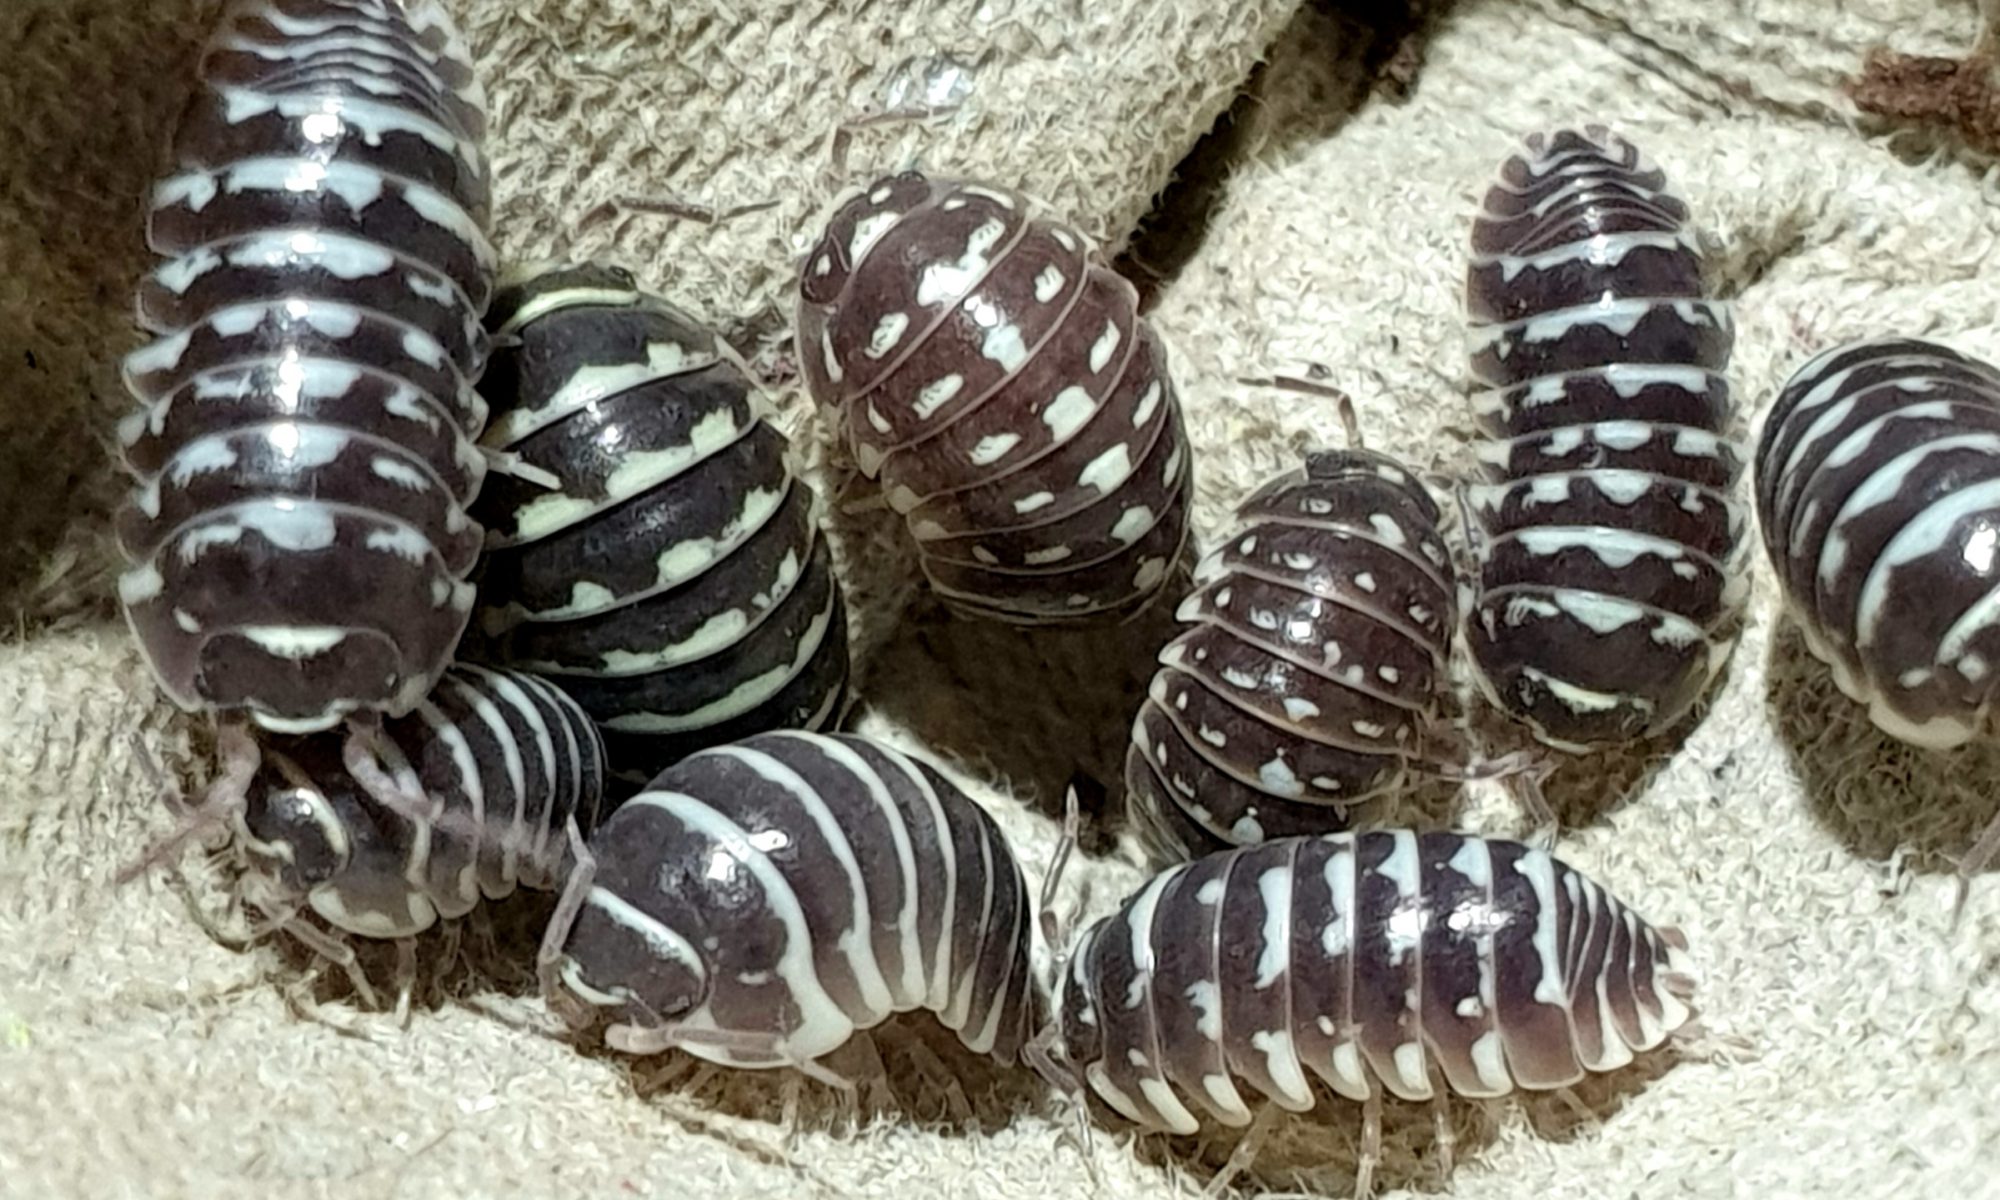 Armadillidium maculatum "Zebra"